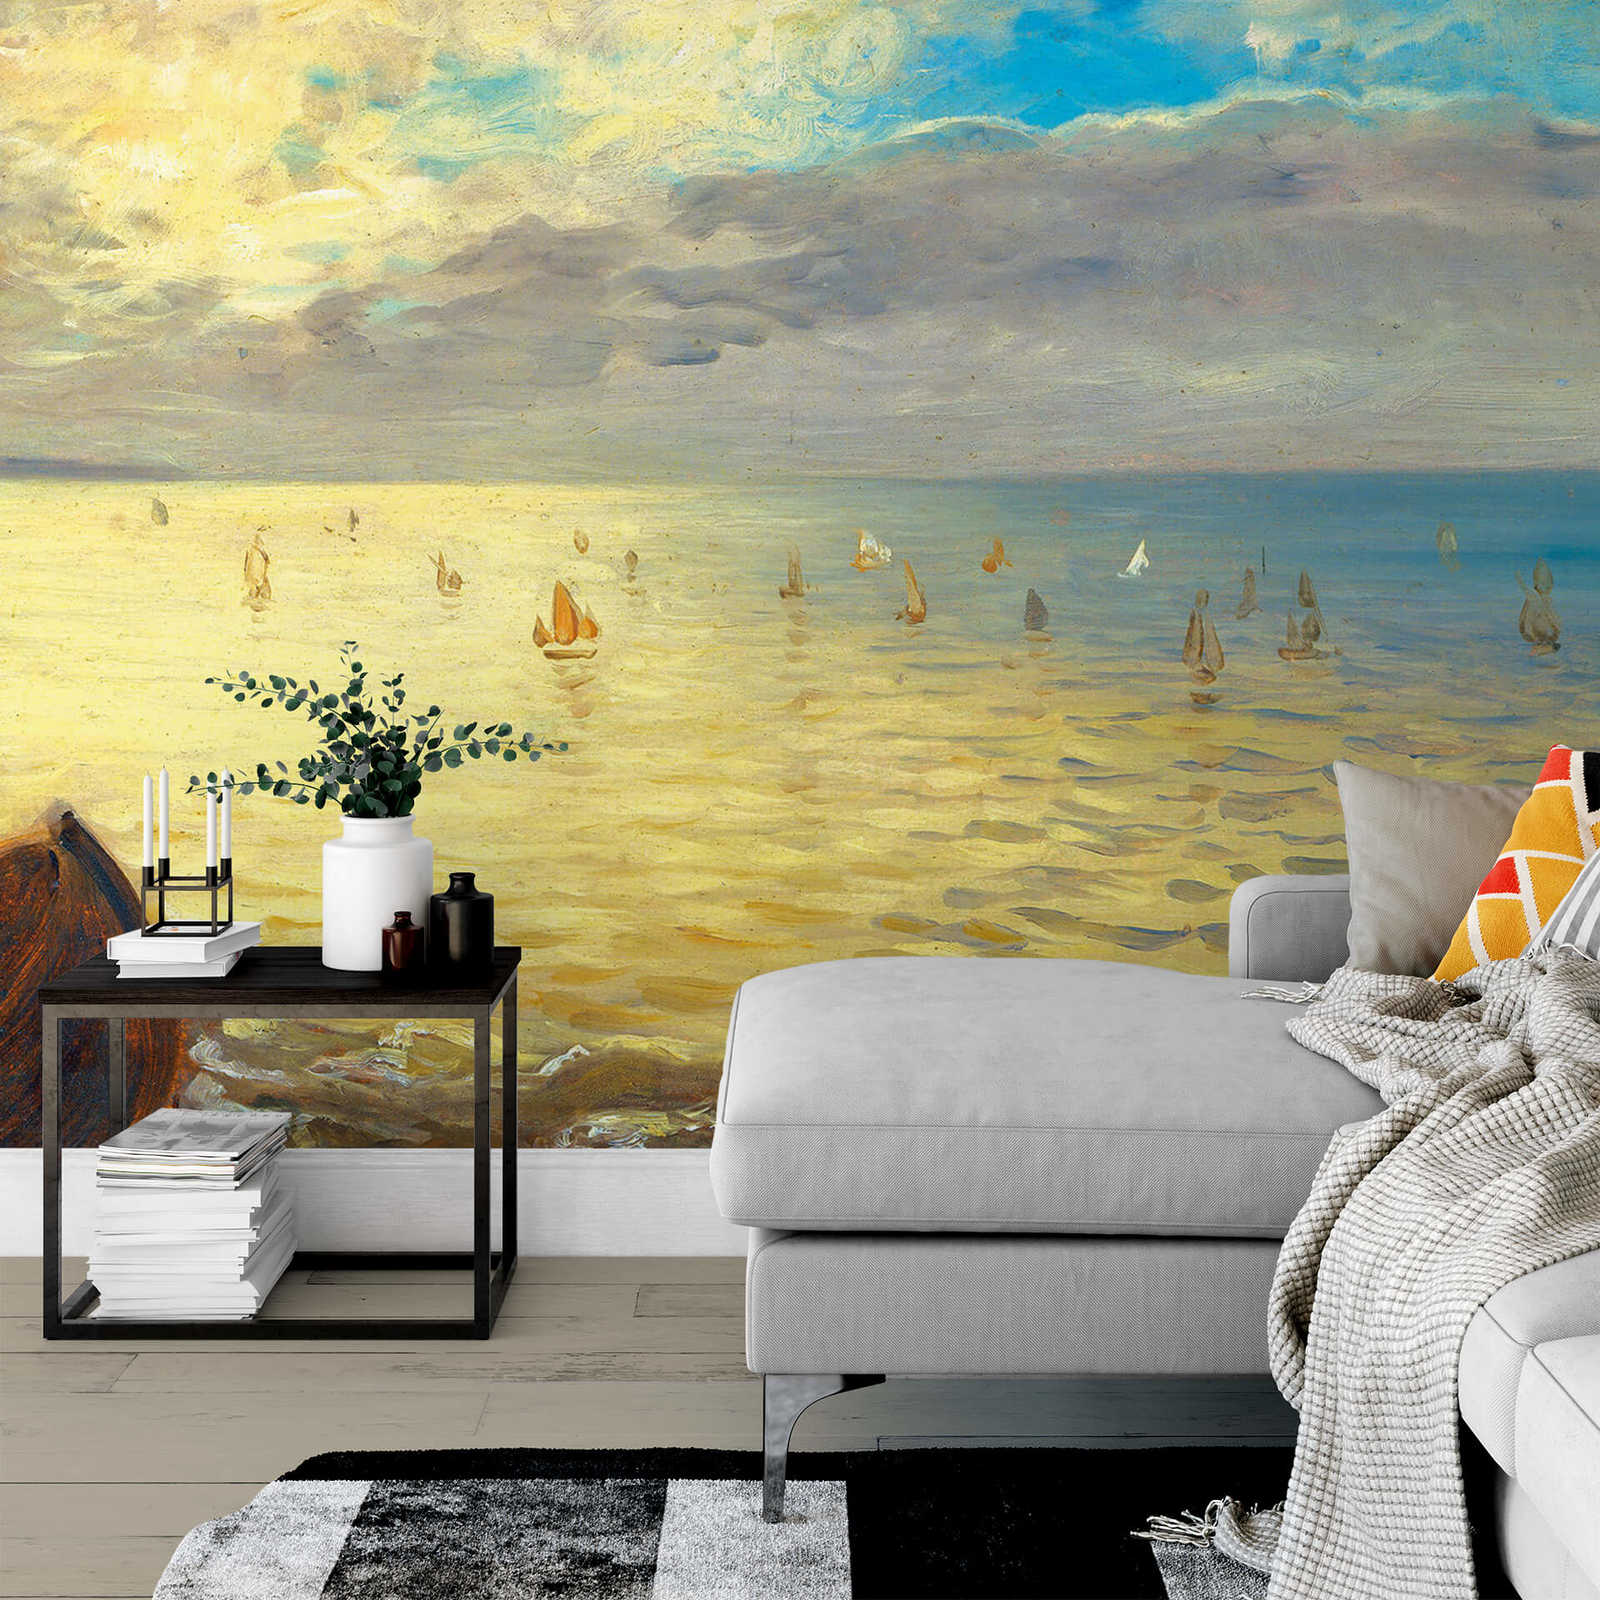             Papel pintado Playa y Mar - Amarillo, Azul
        